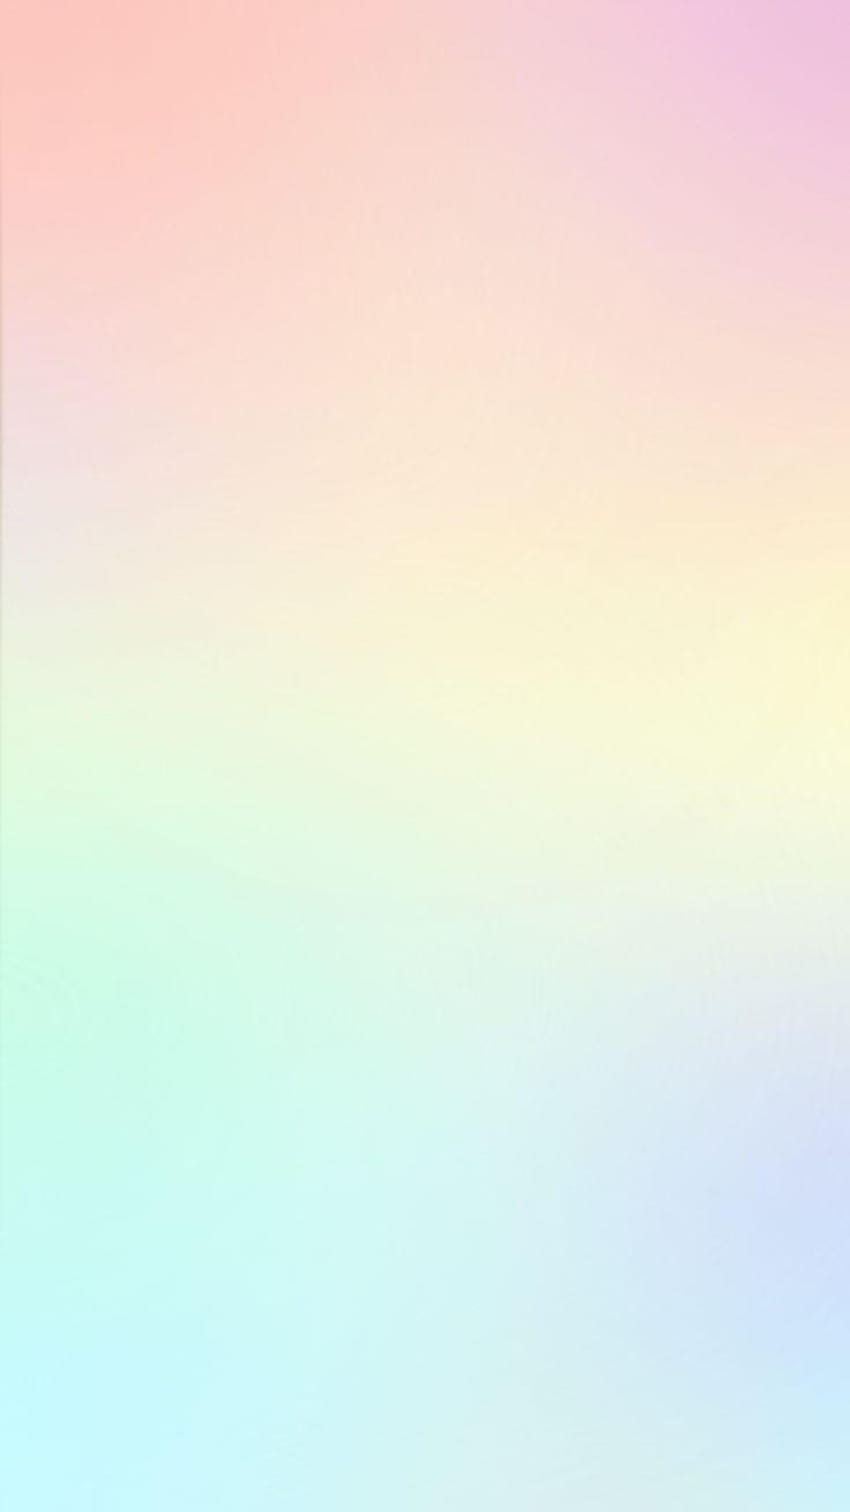 s warna pastel polos 2, iphone polos fondo de pantalla del teléfono